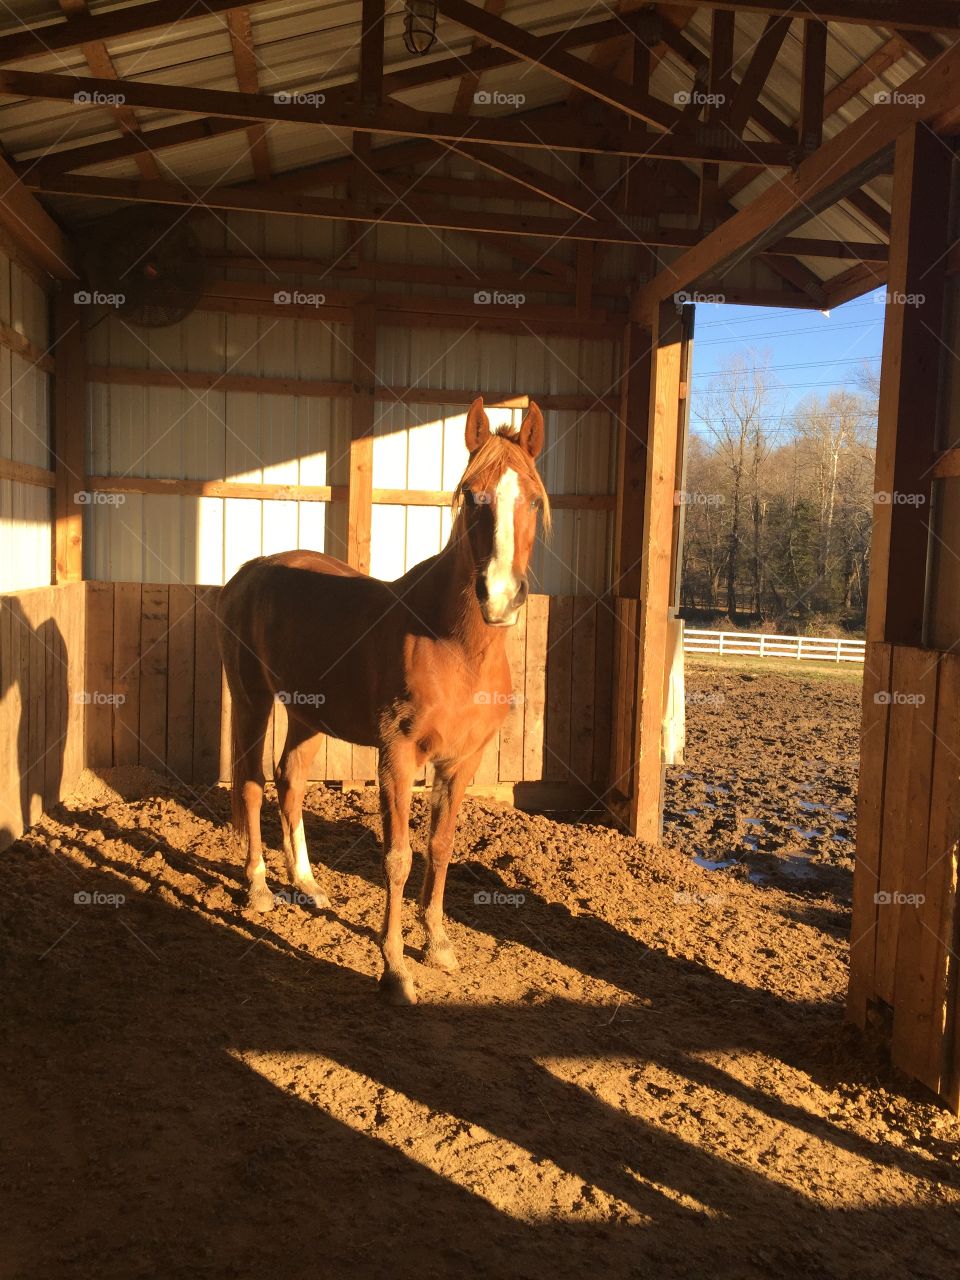 Beautiful quarter-horse in her pasture!